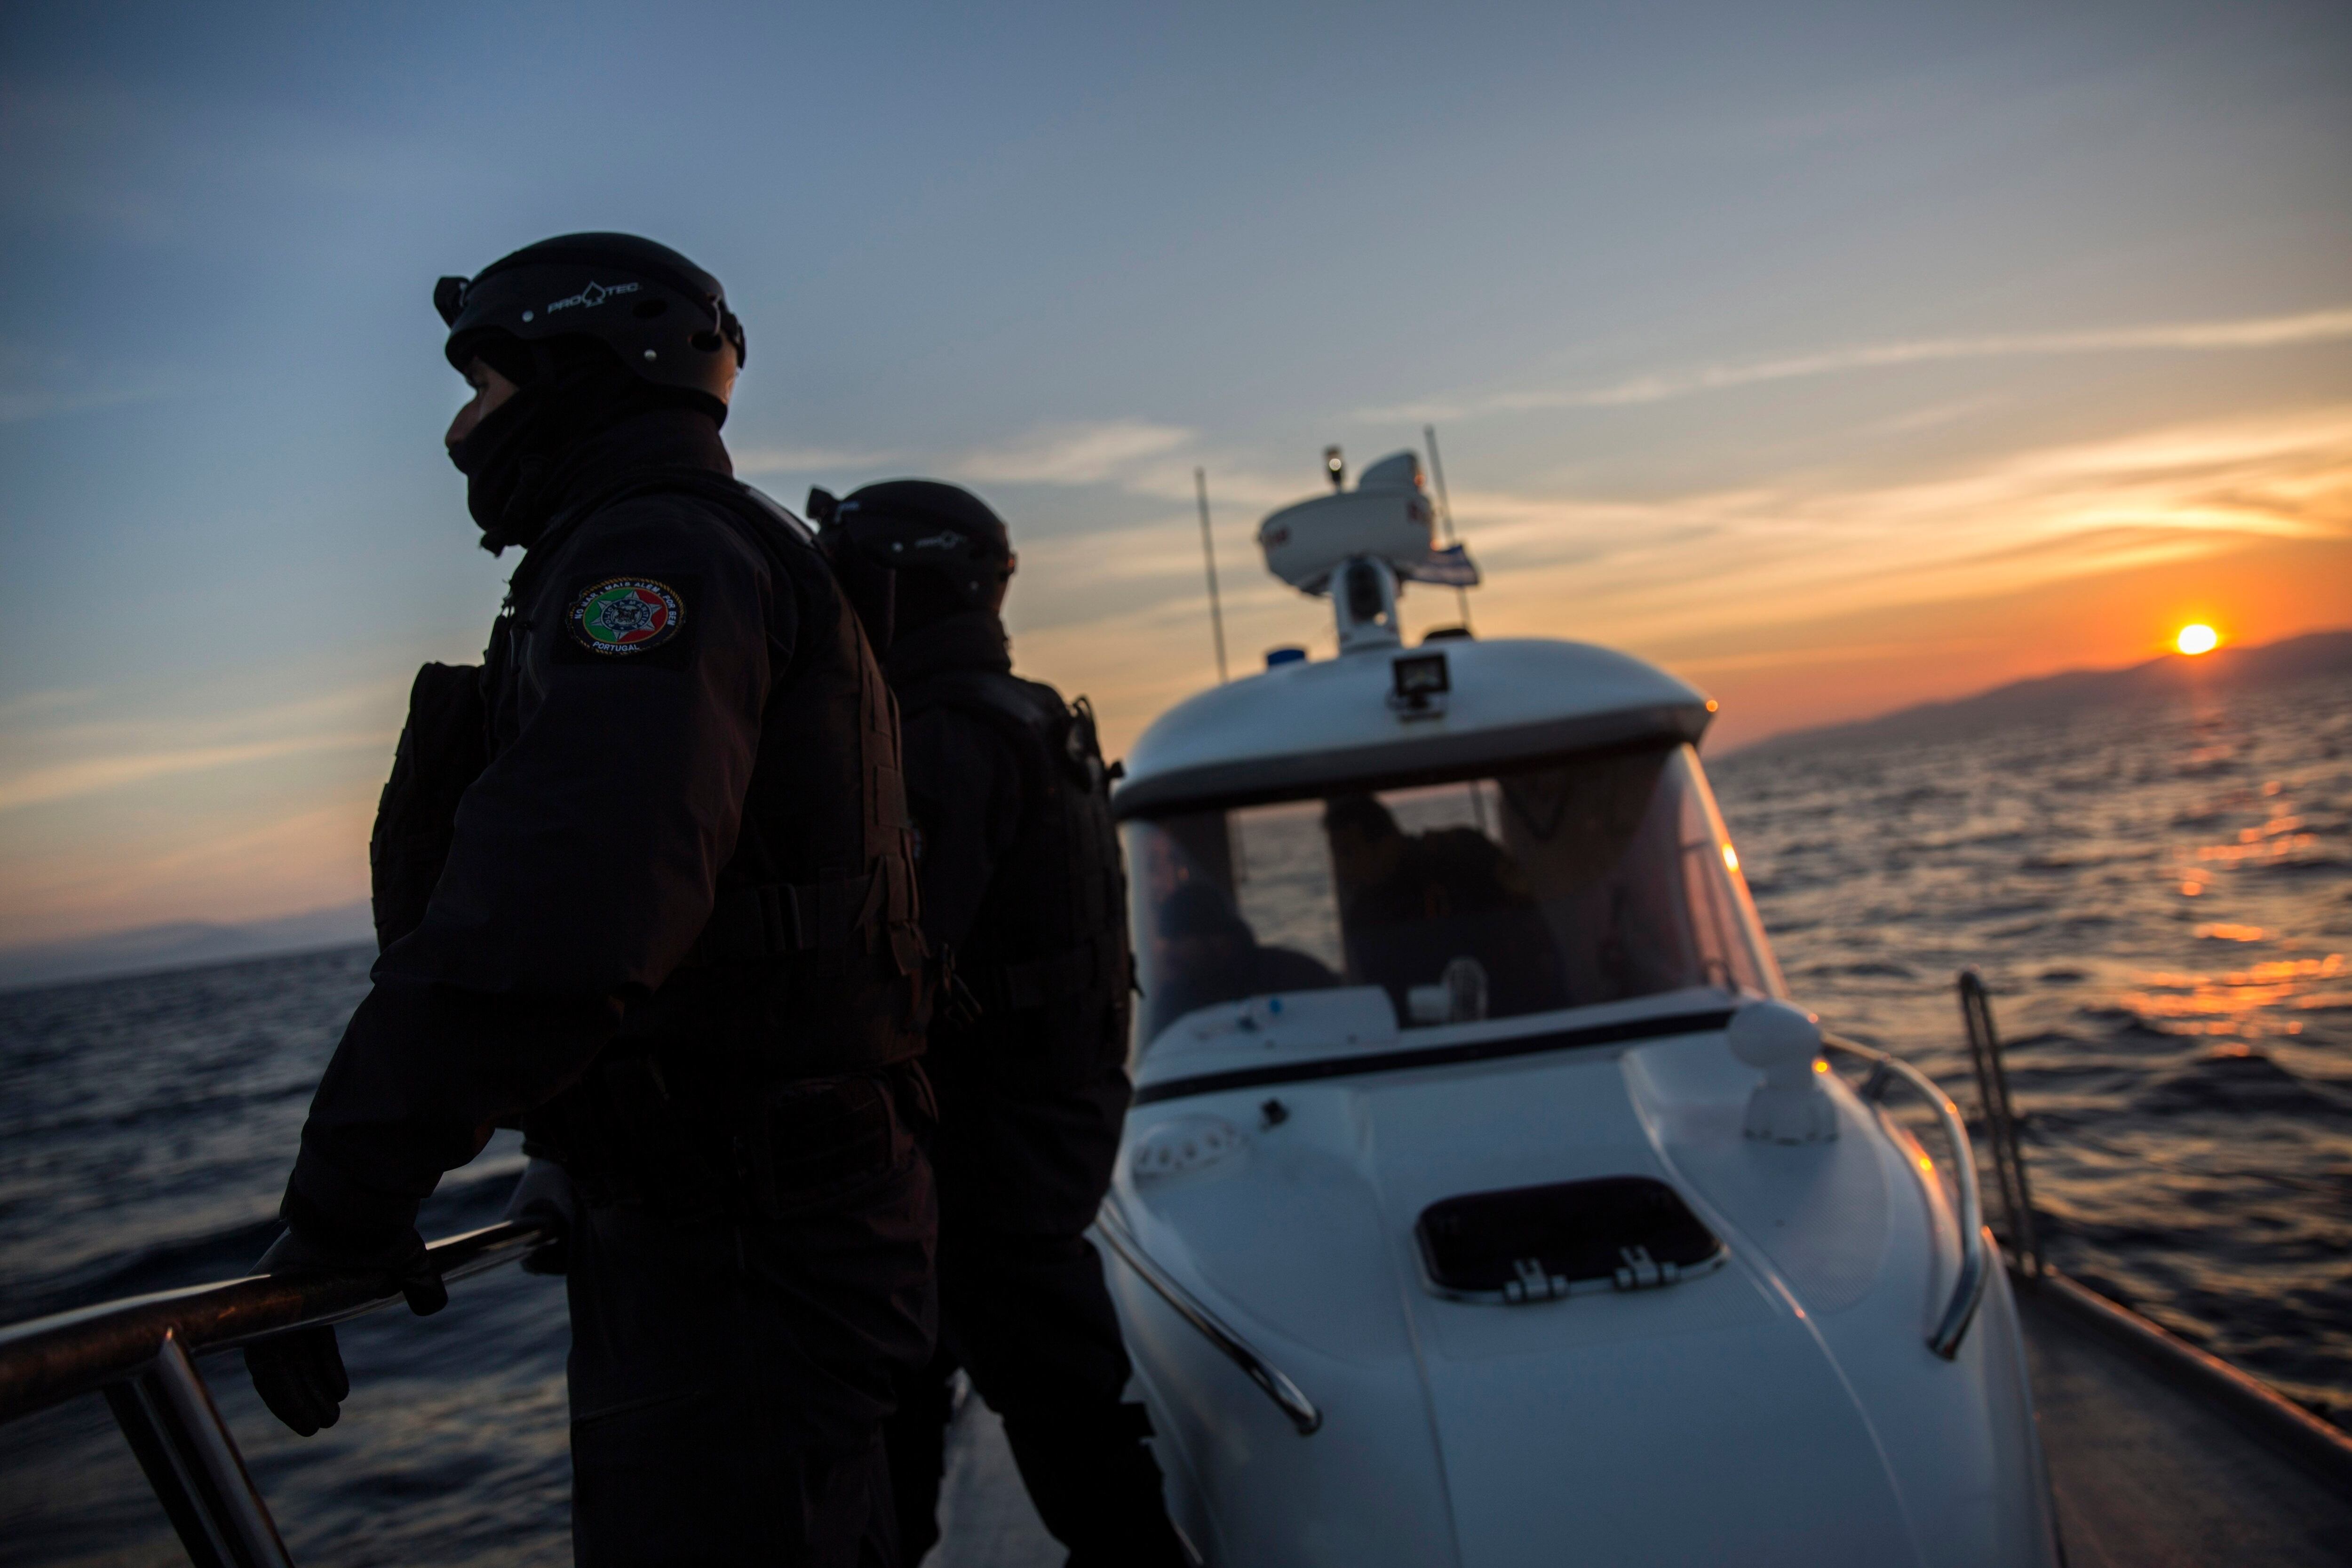 ARCHIVO - Integrantes de Frontex, la Agencia Europea de la Guardia de Fronteras y Costas, realiza patrullaje cerca de la isla griega de Lesbos, el 8 de diciembre de 2015. (AP Foto/Santi Palacios, archivo)